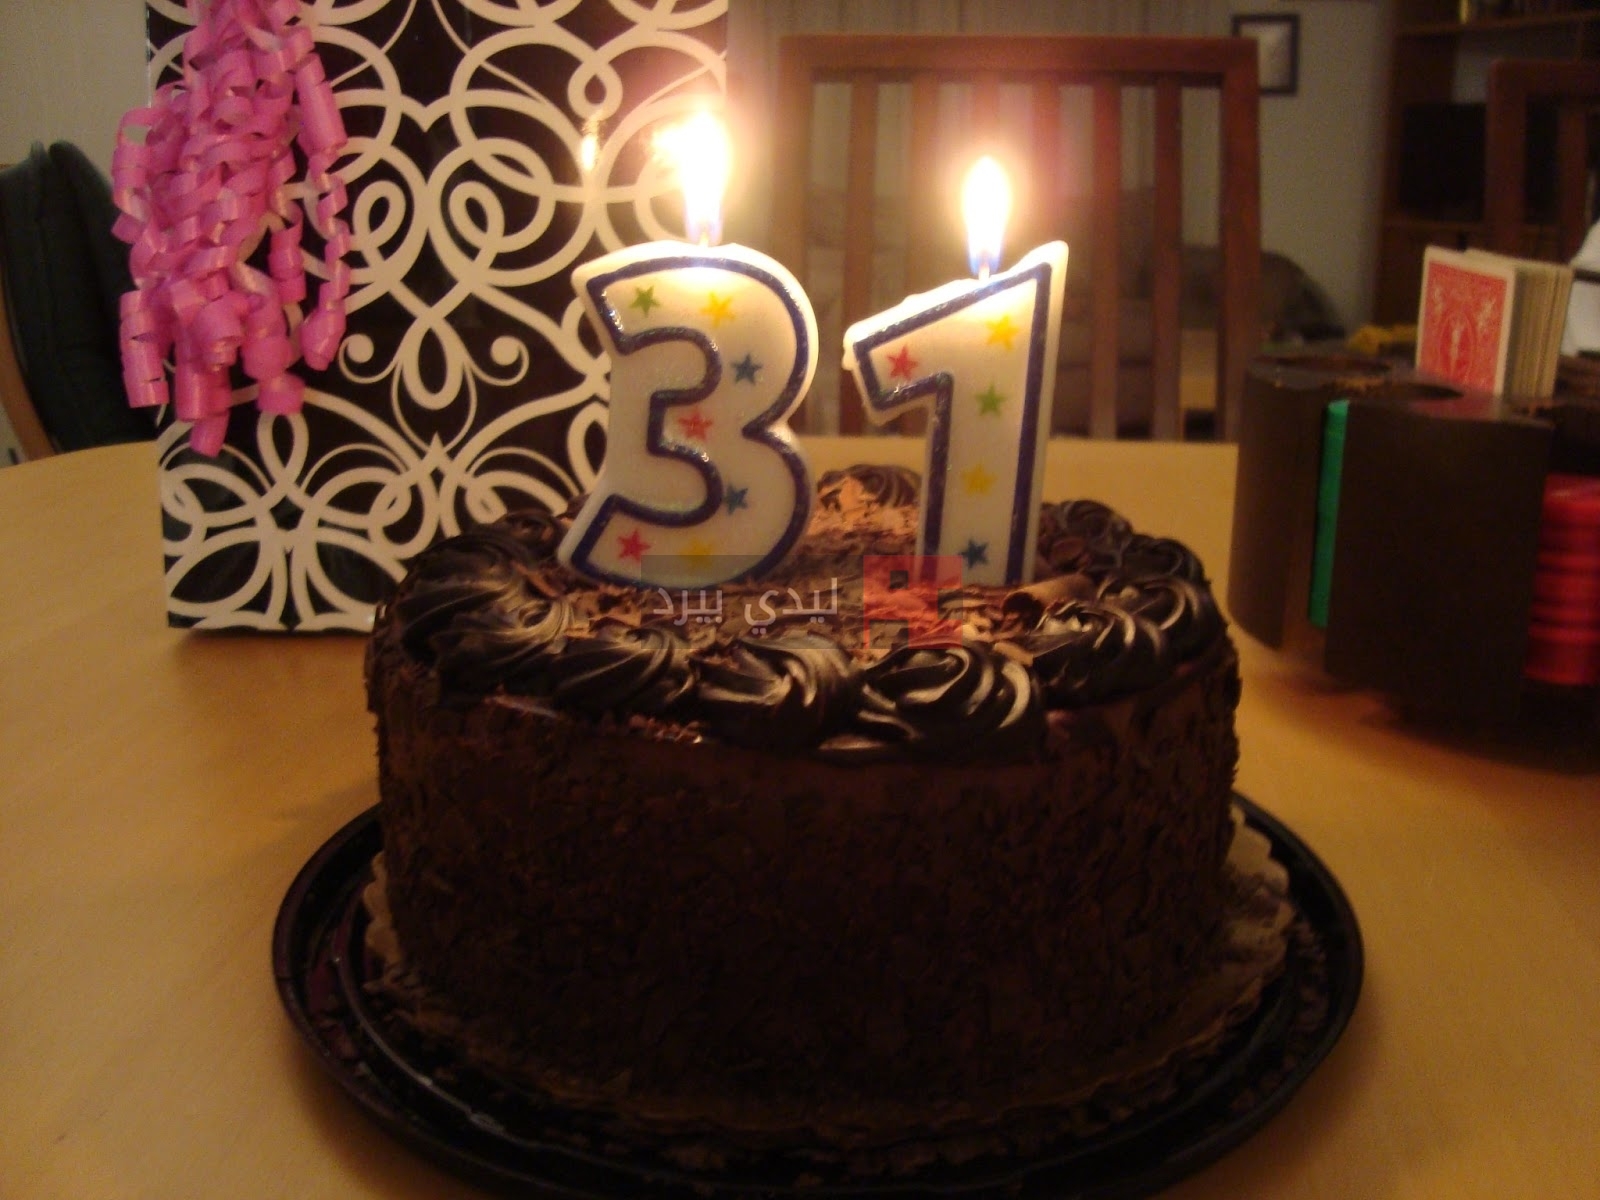 31 год поздравляю. 31 Год день рождения. Торт на день рождения 31 год. Тортик с цифрой 31. Торт красивый на 31 год.